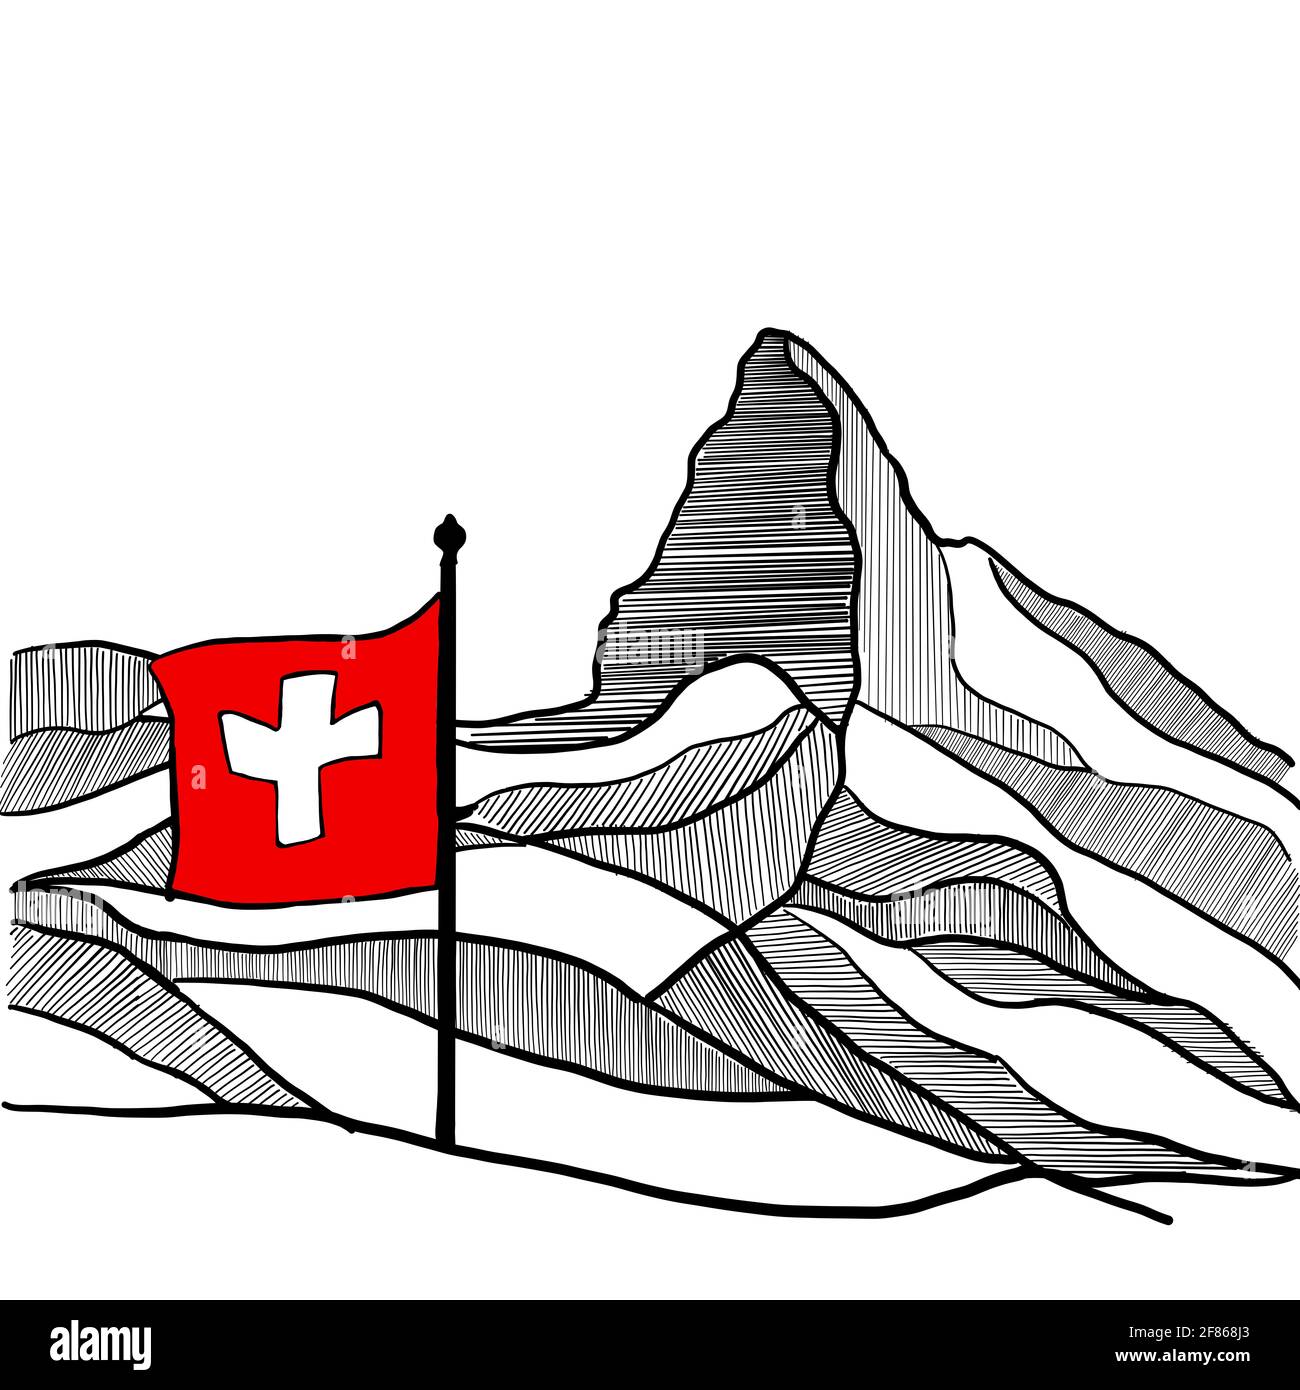 La silhouette bianca e nera della famosa montagna Cervino o Cervino, parte delle Alpi italiane e svizzere. Disegno fatto a mano della cima principale Foto Stock